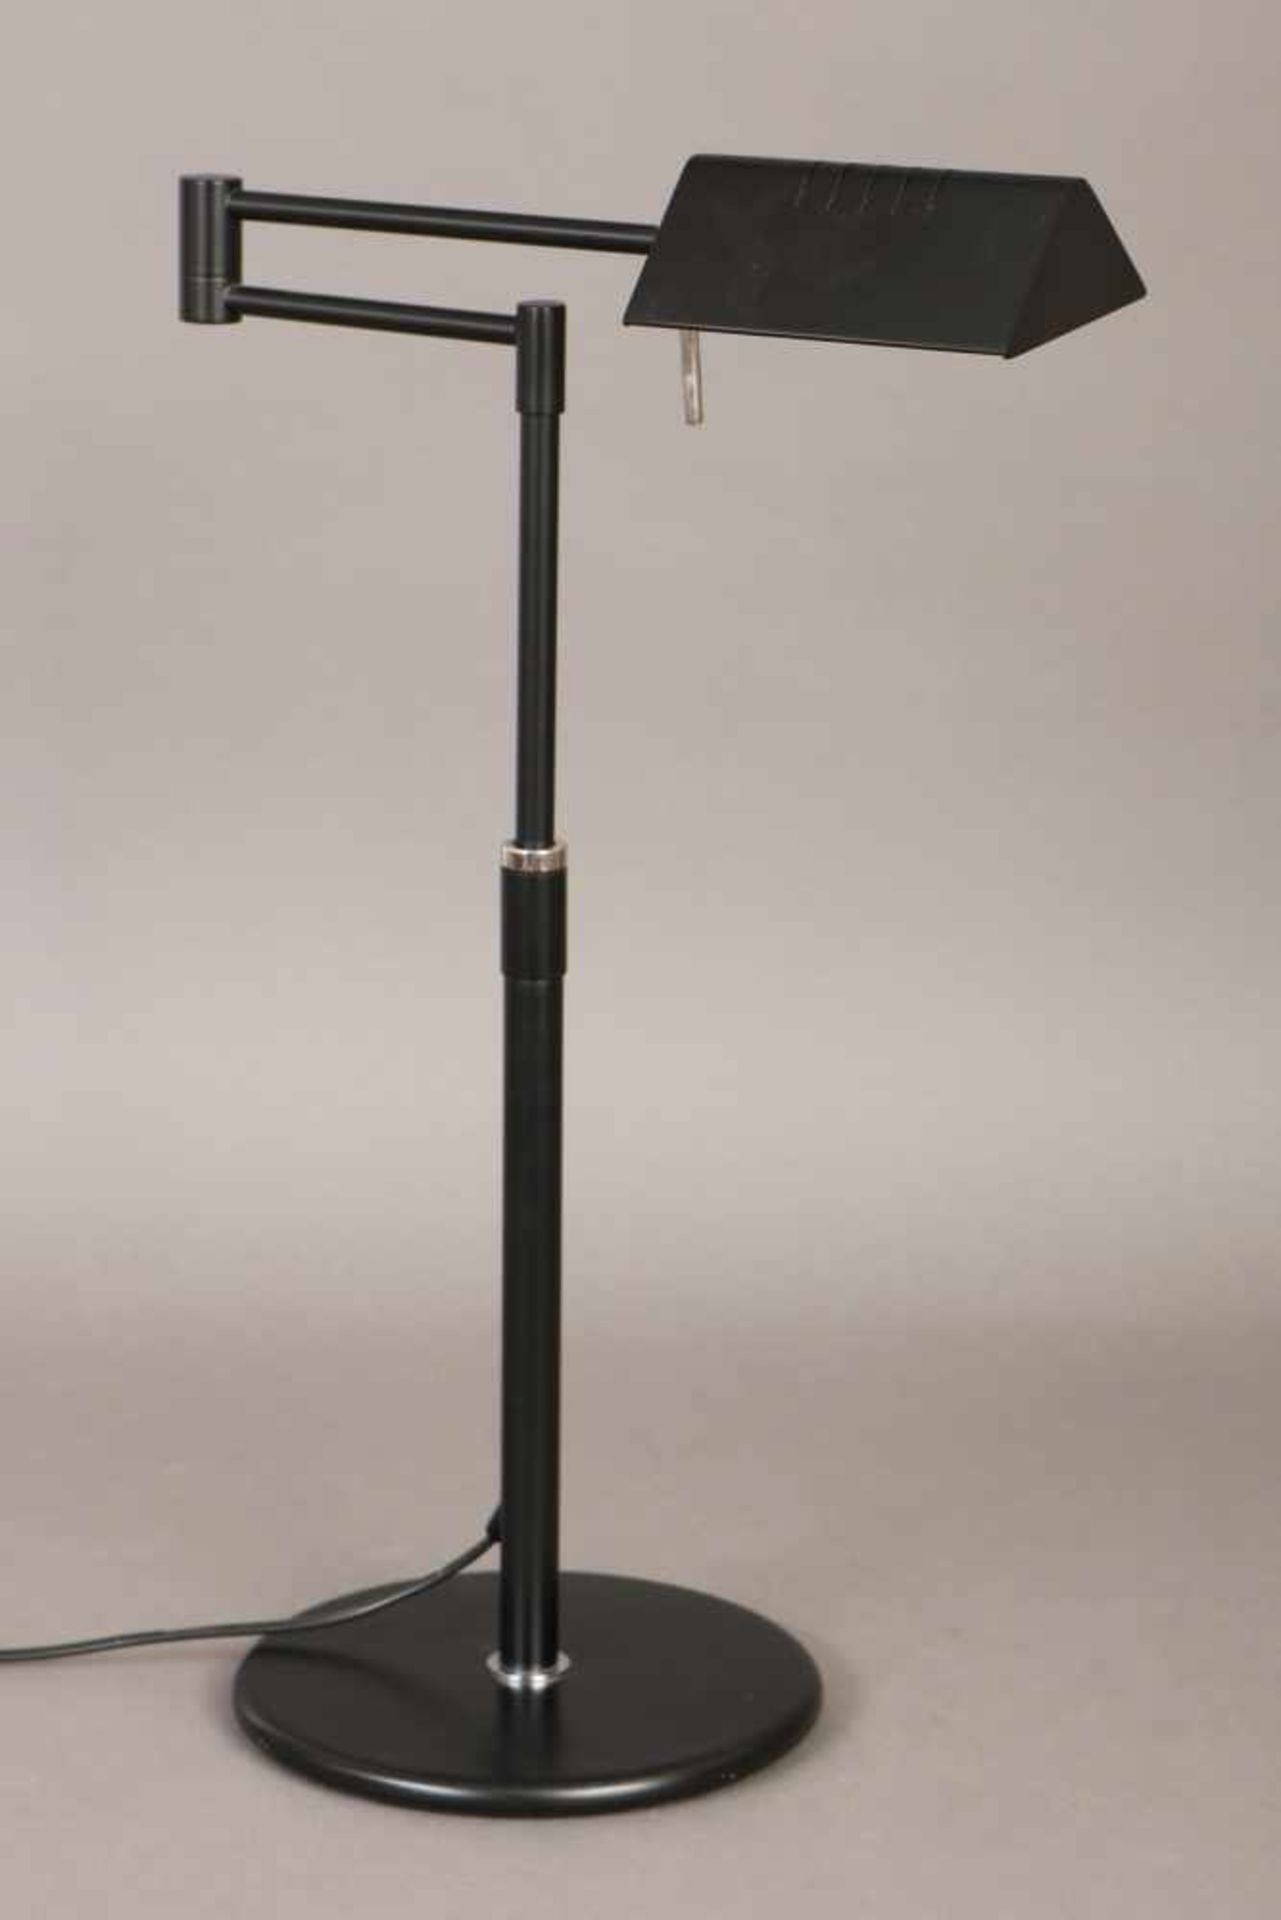 Schreibtischlampegeschwärztes Metall, Schwenkarm, höhenverstellbar, 3-eckiger Schirm mit Halogen-